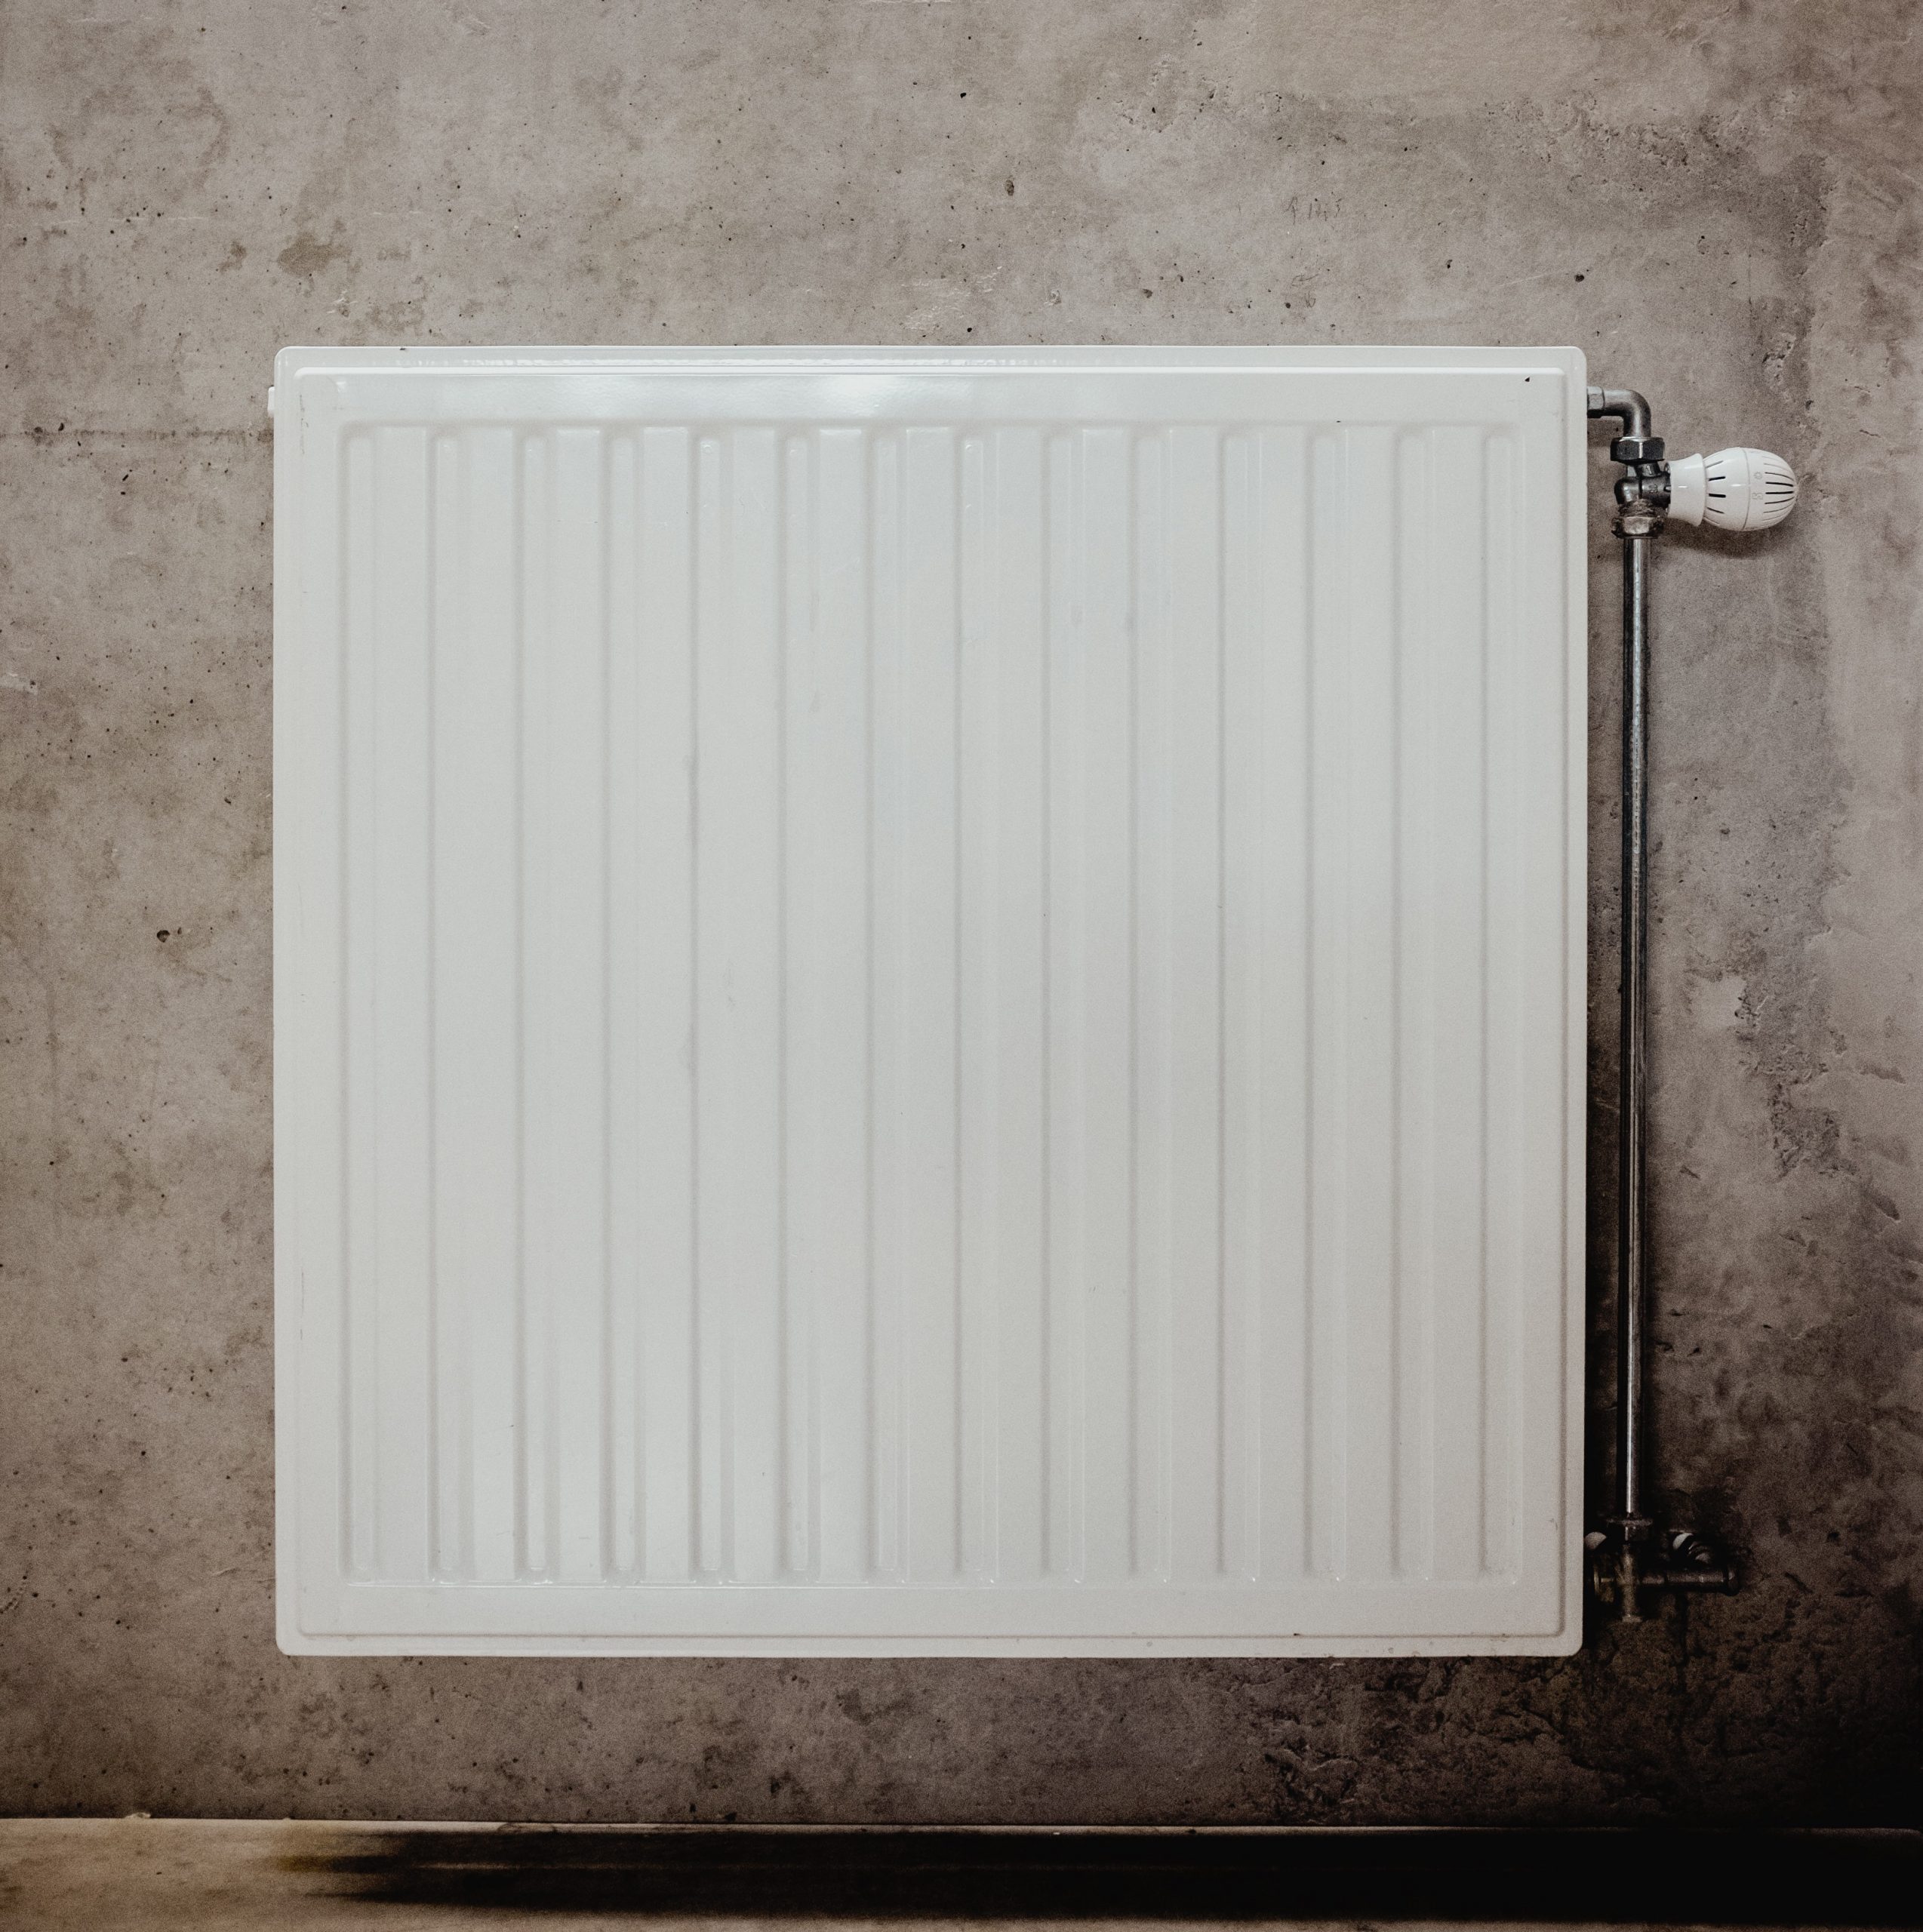 Purger les radiateurs: Comment ça marche